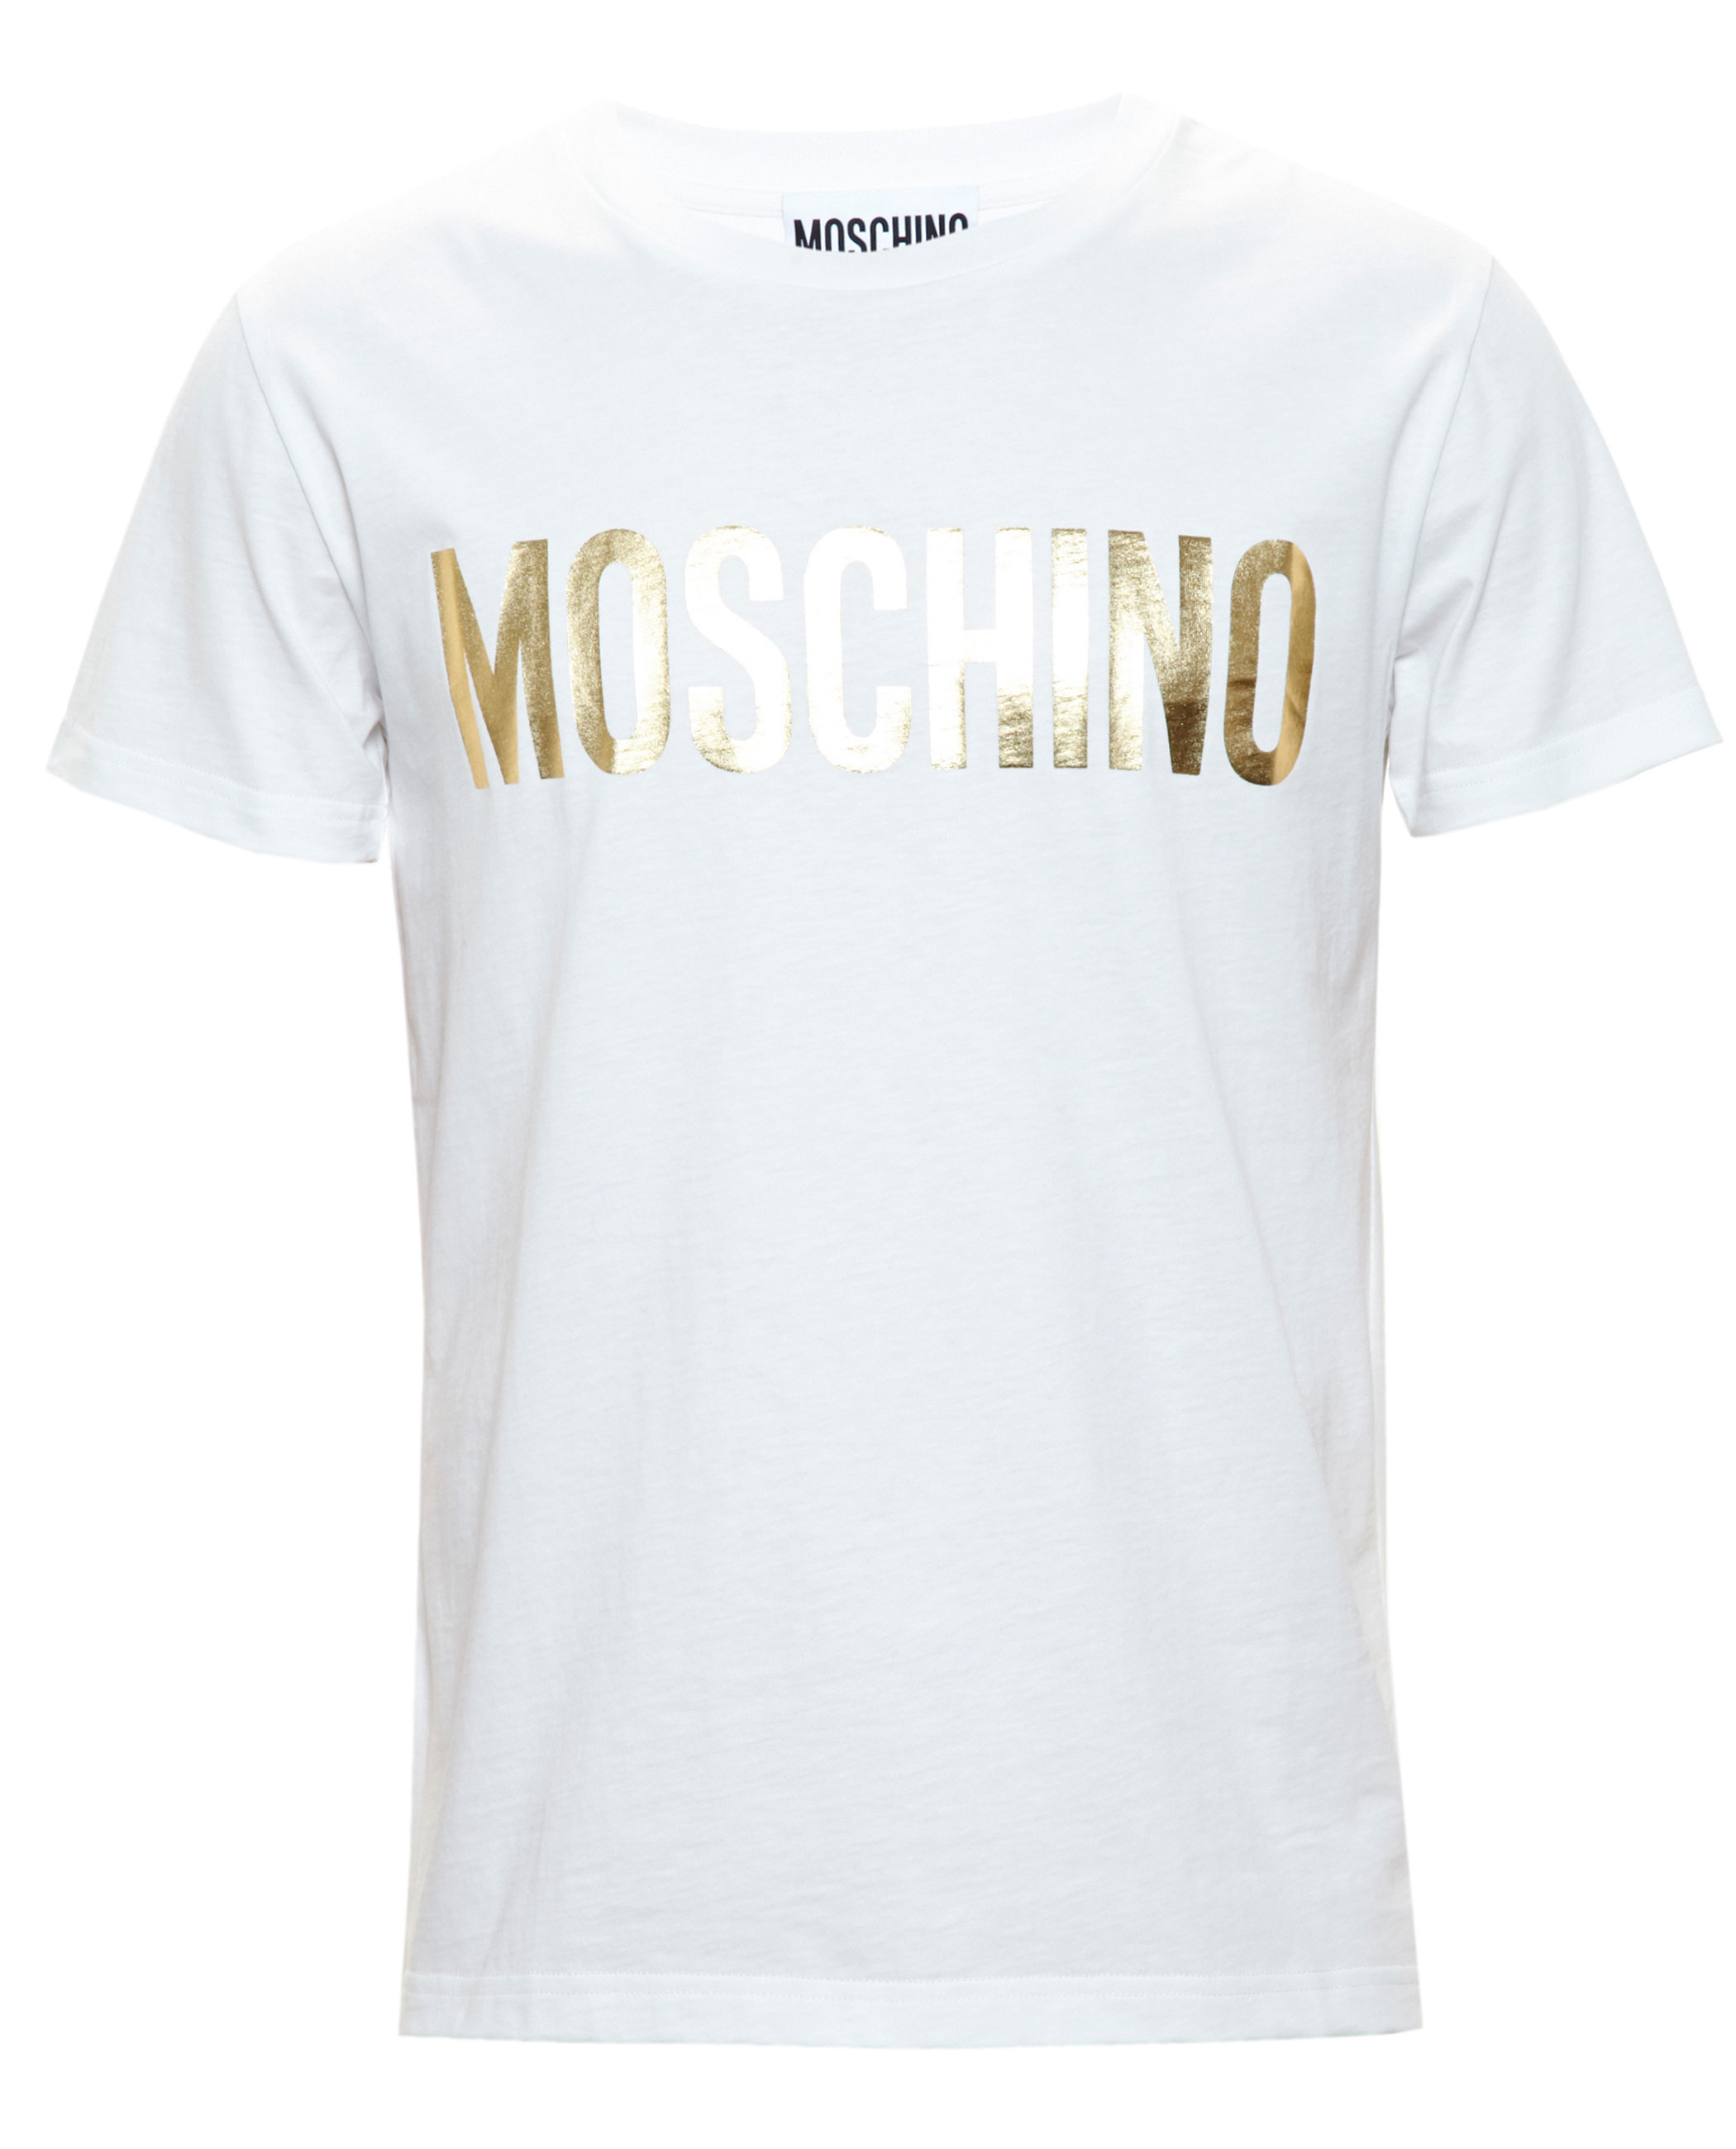 moschino shirt white